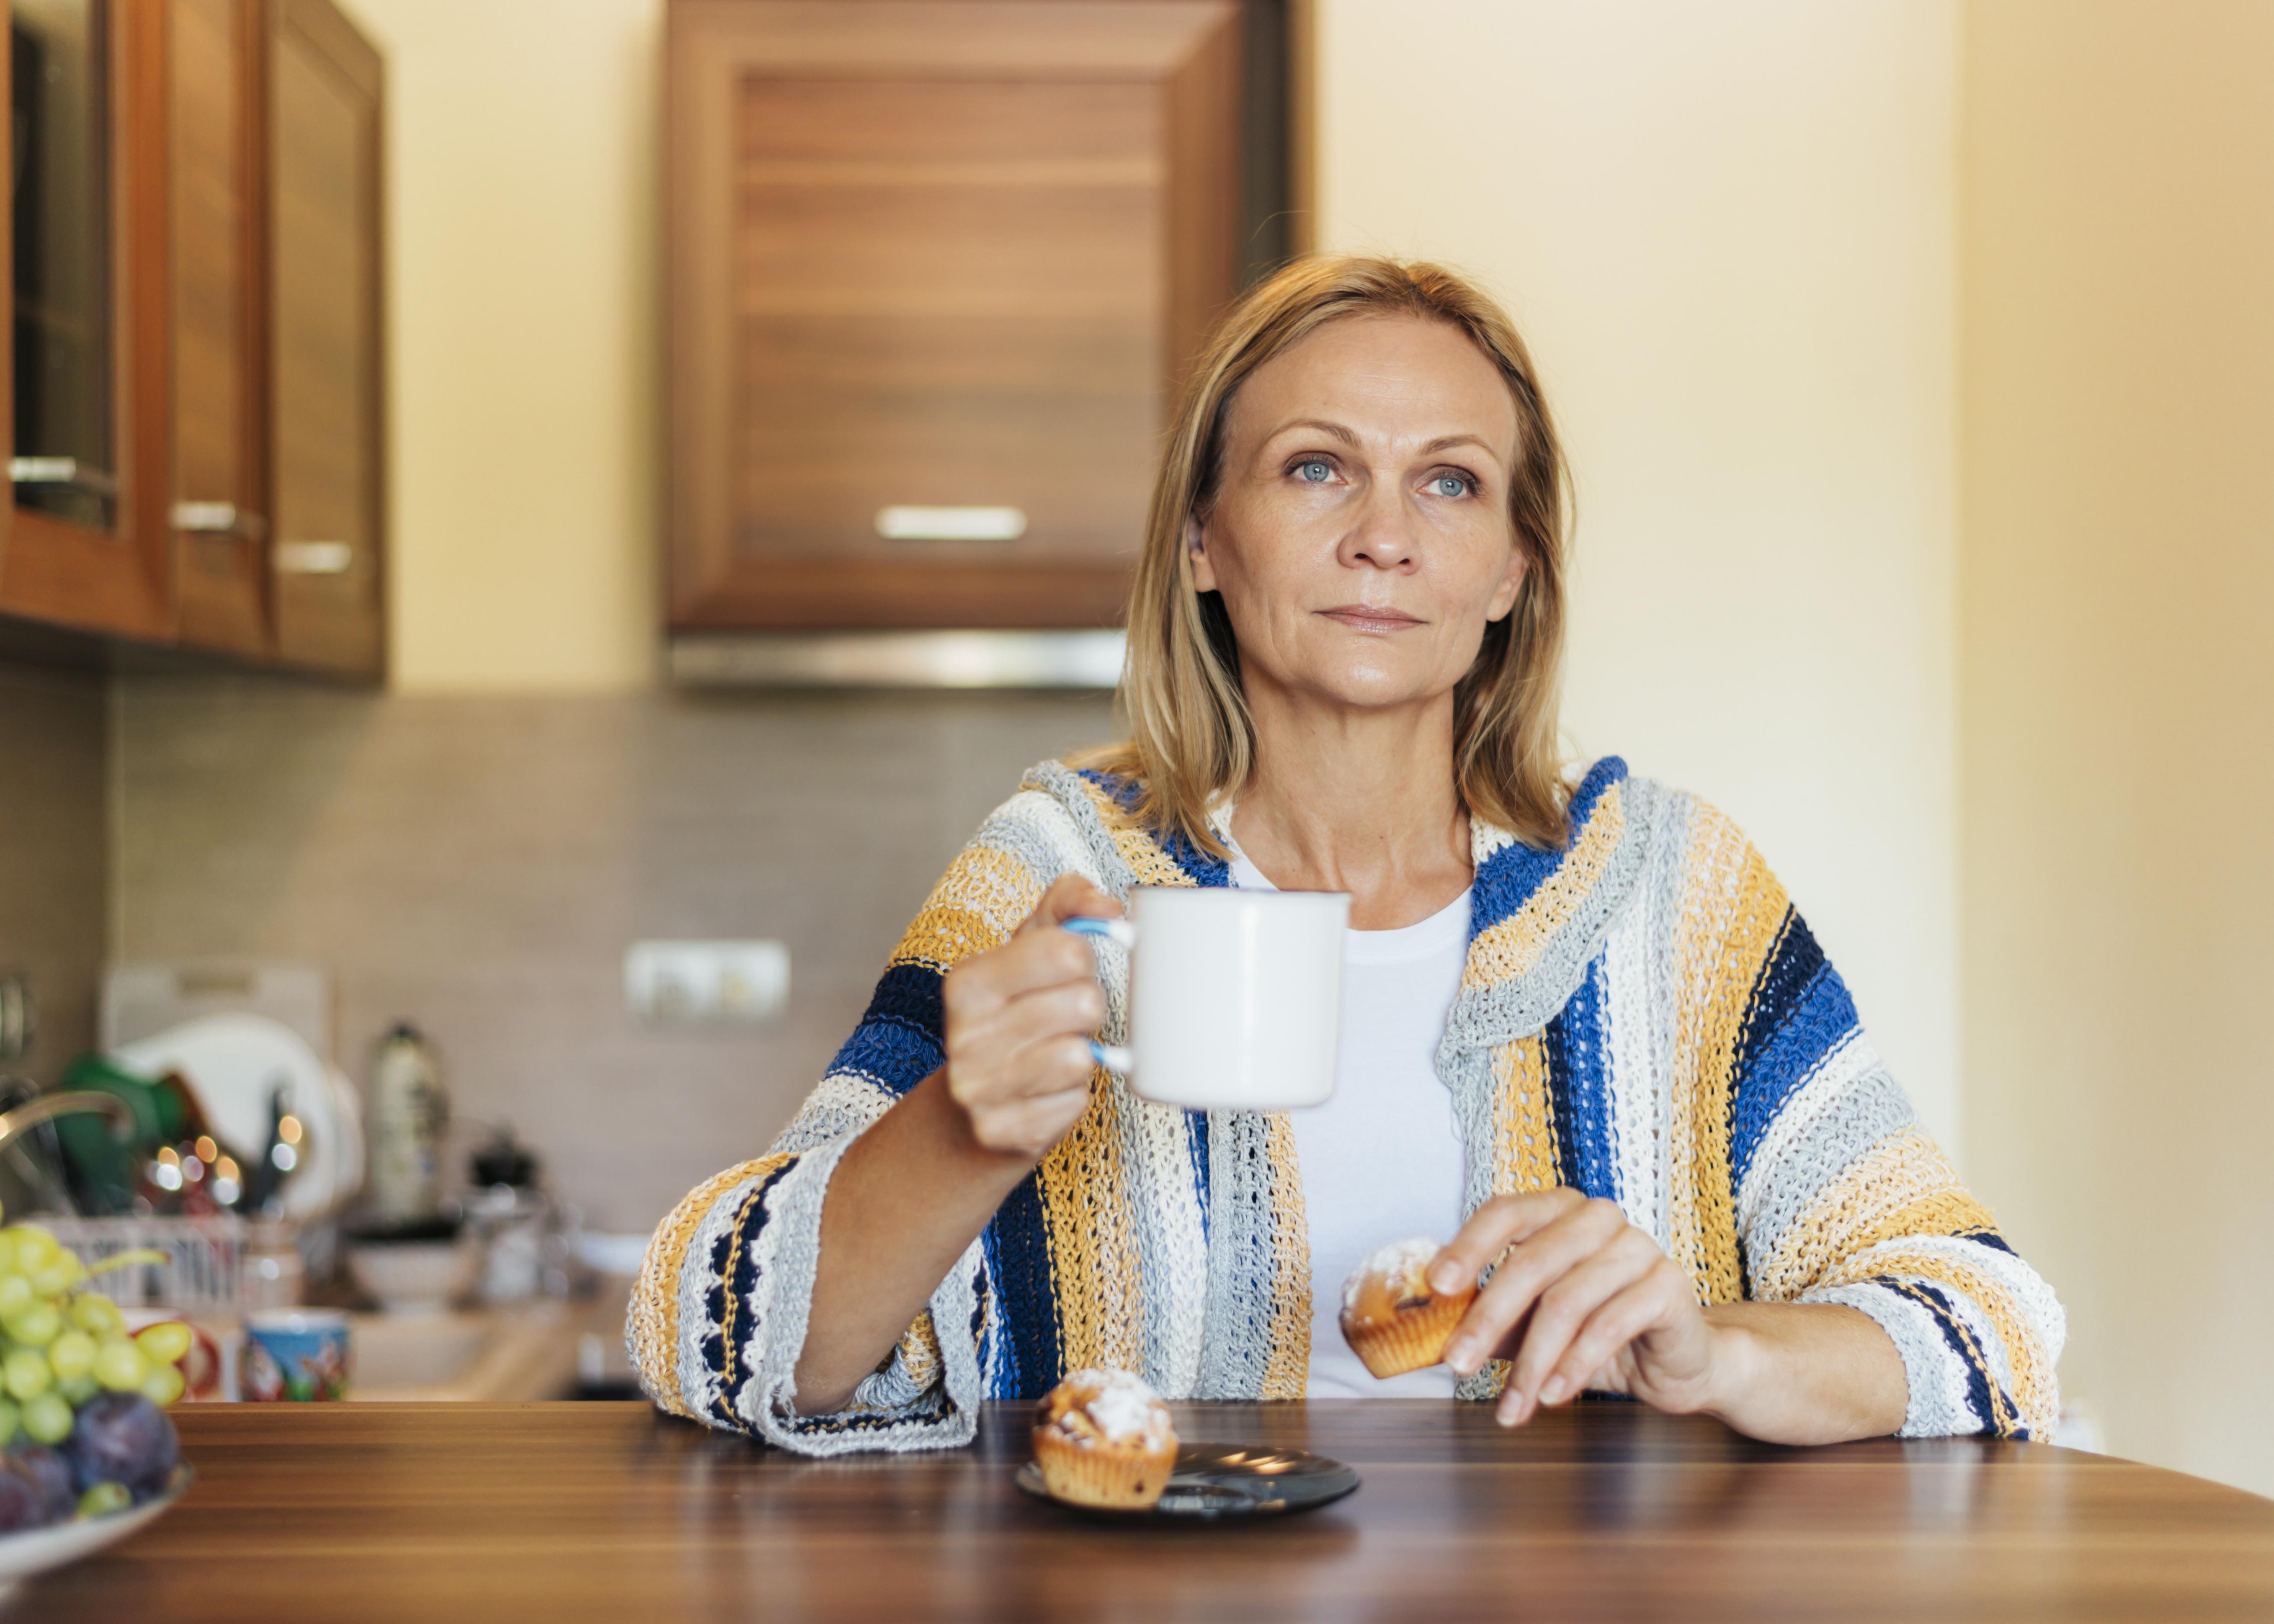 Frau in der Küche mit einer Tasse Tee | Quelle: Freepik